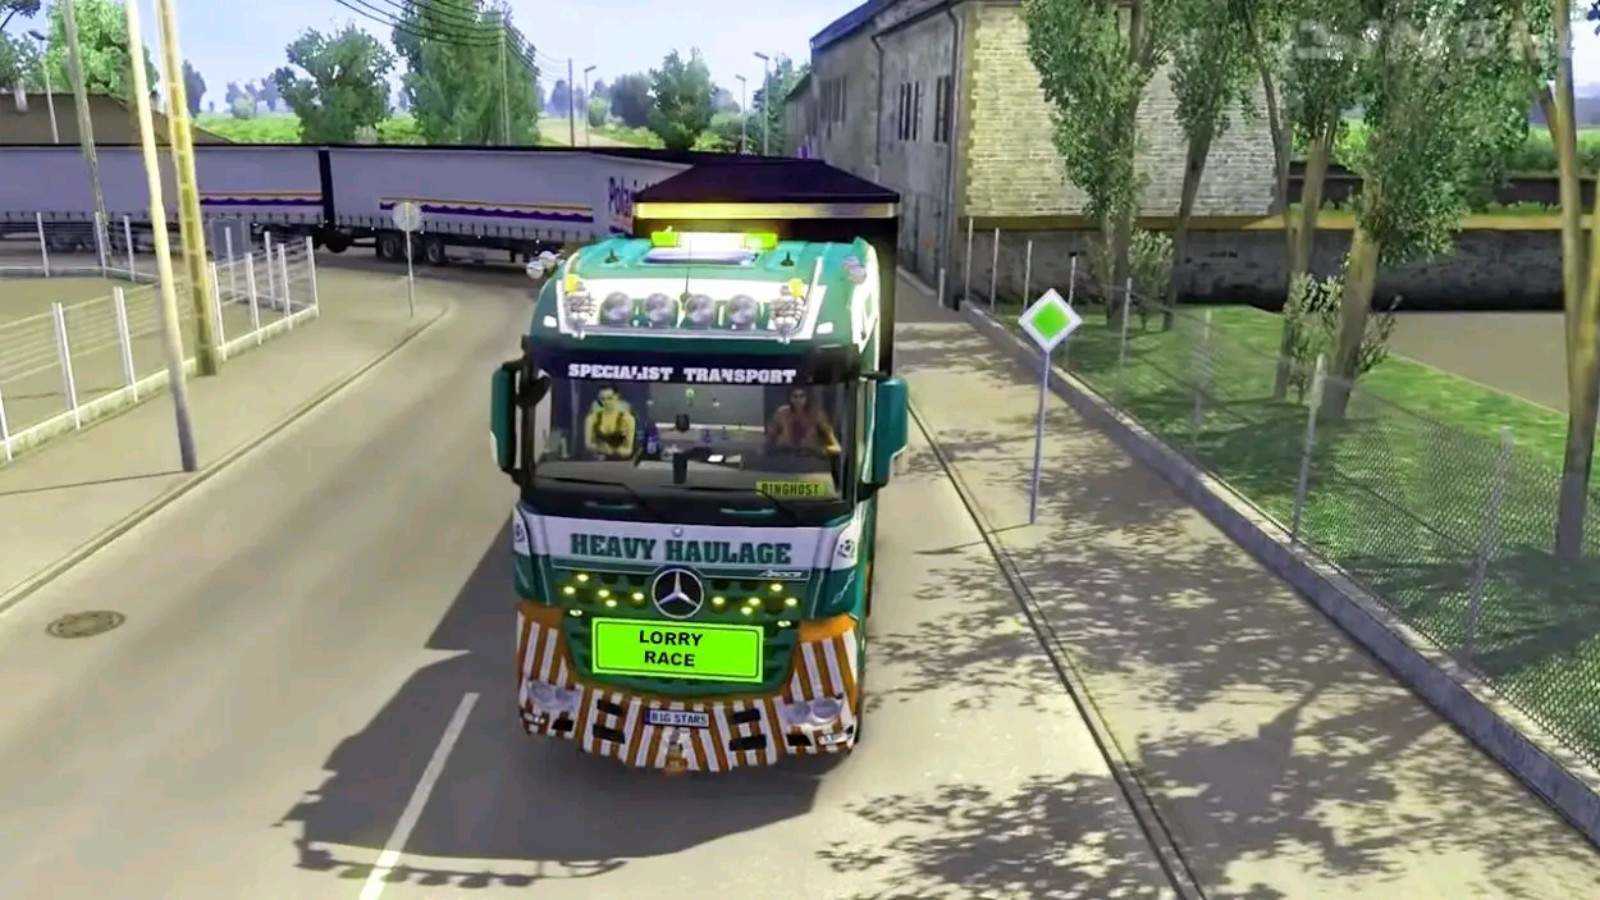 公路卡车模拟驾驶(Truck Racing)